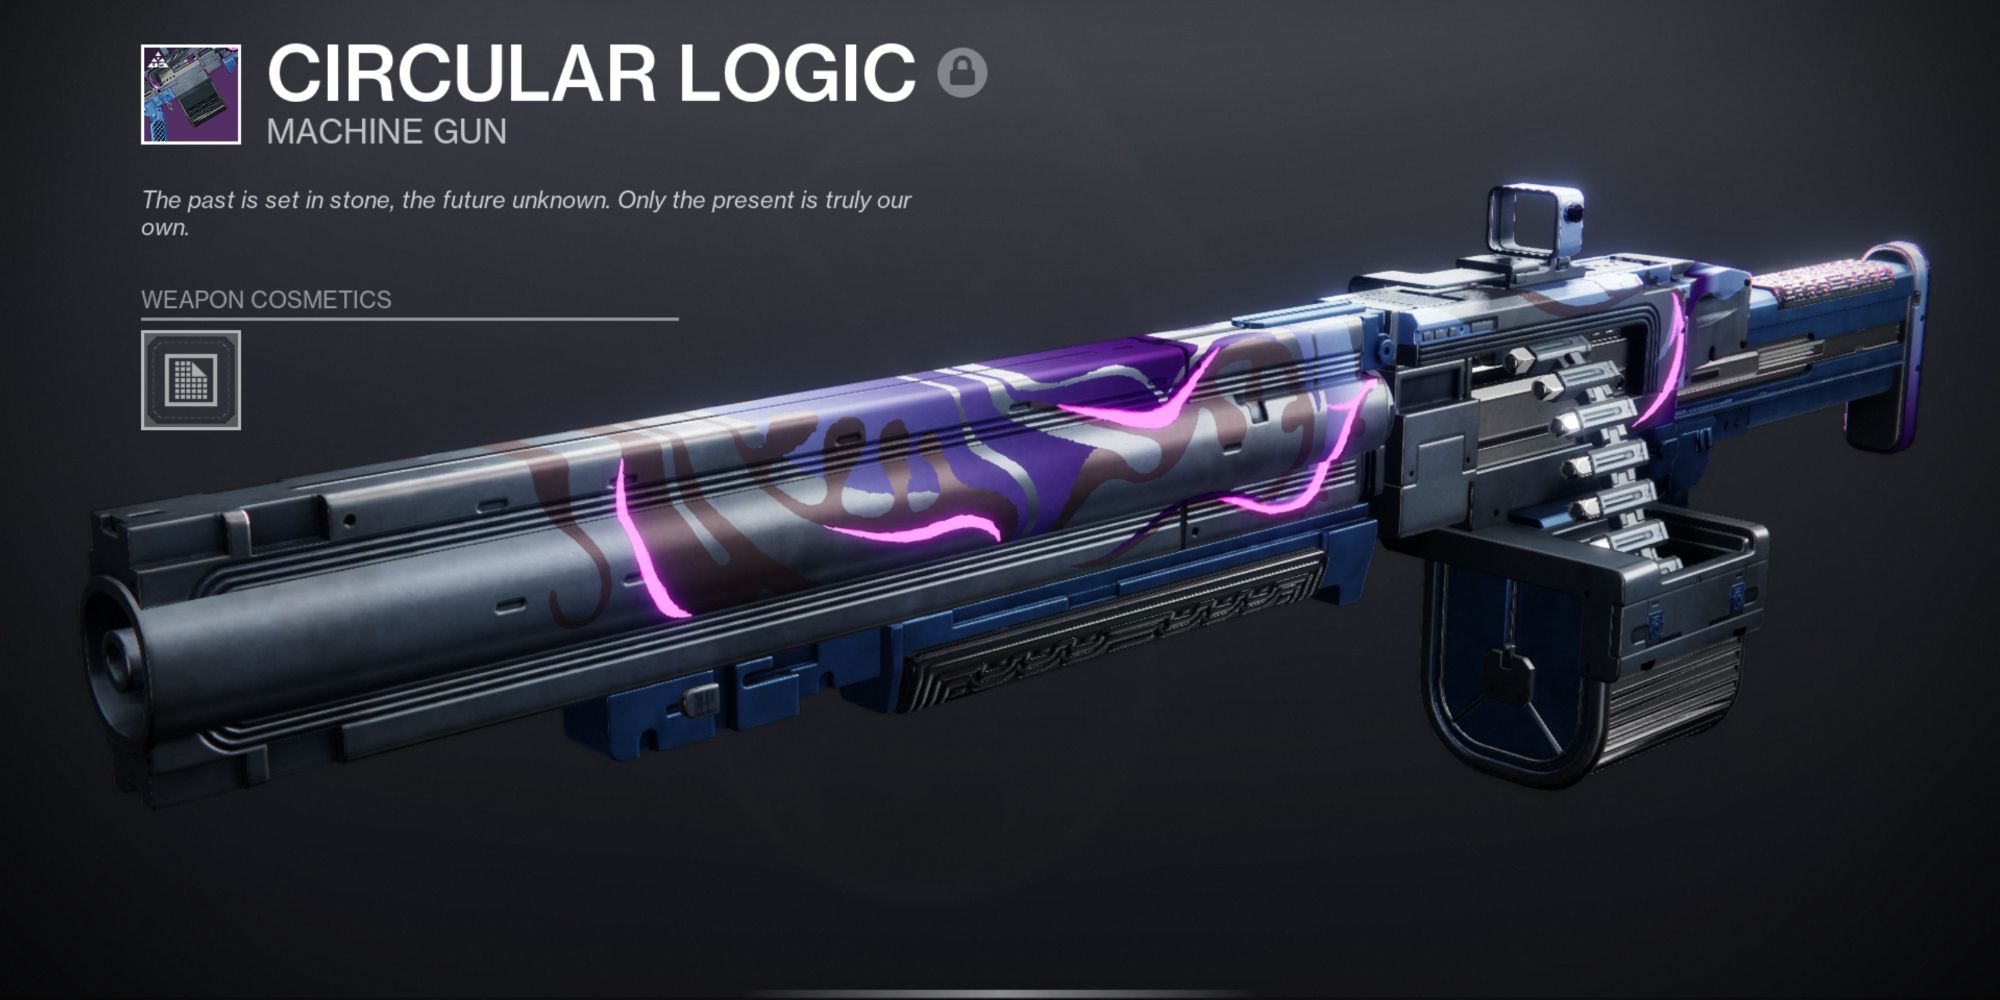 Destiny 2: a long neon purple machine gun